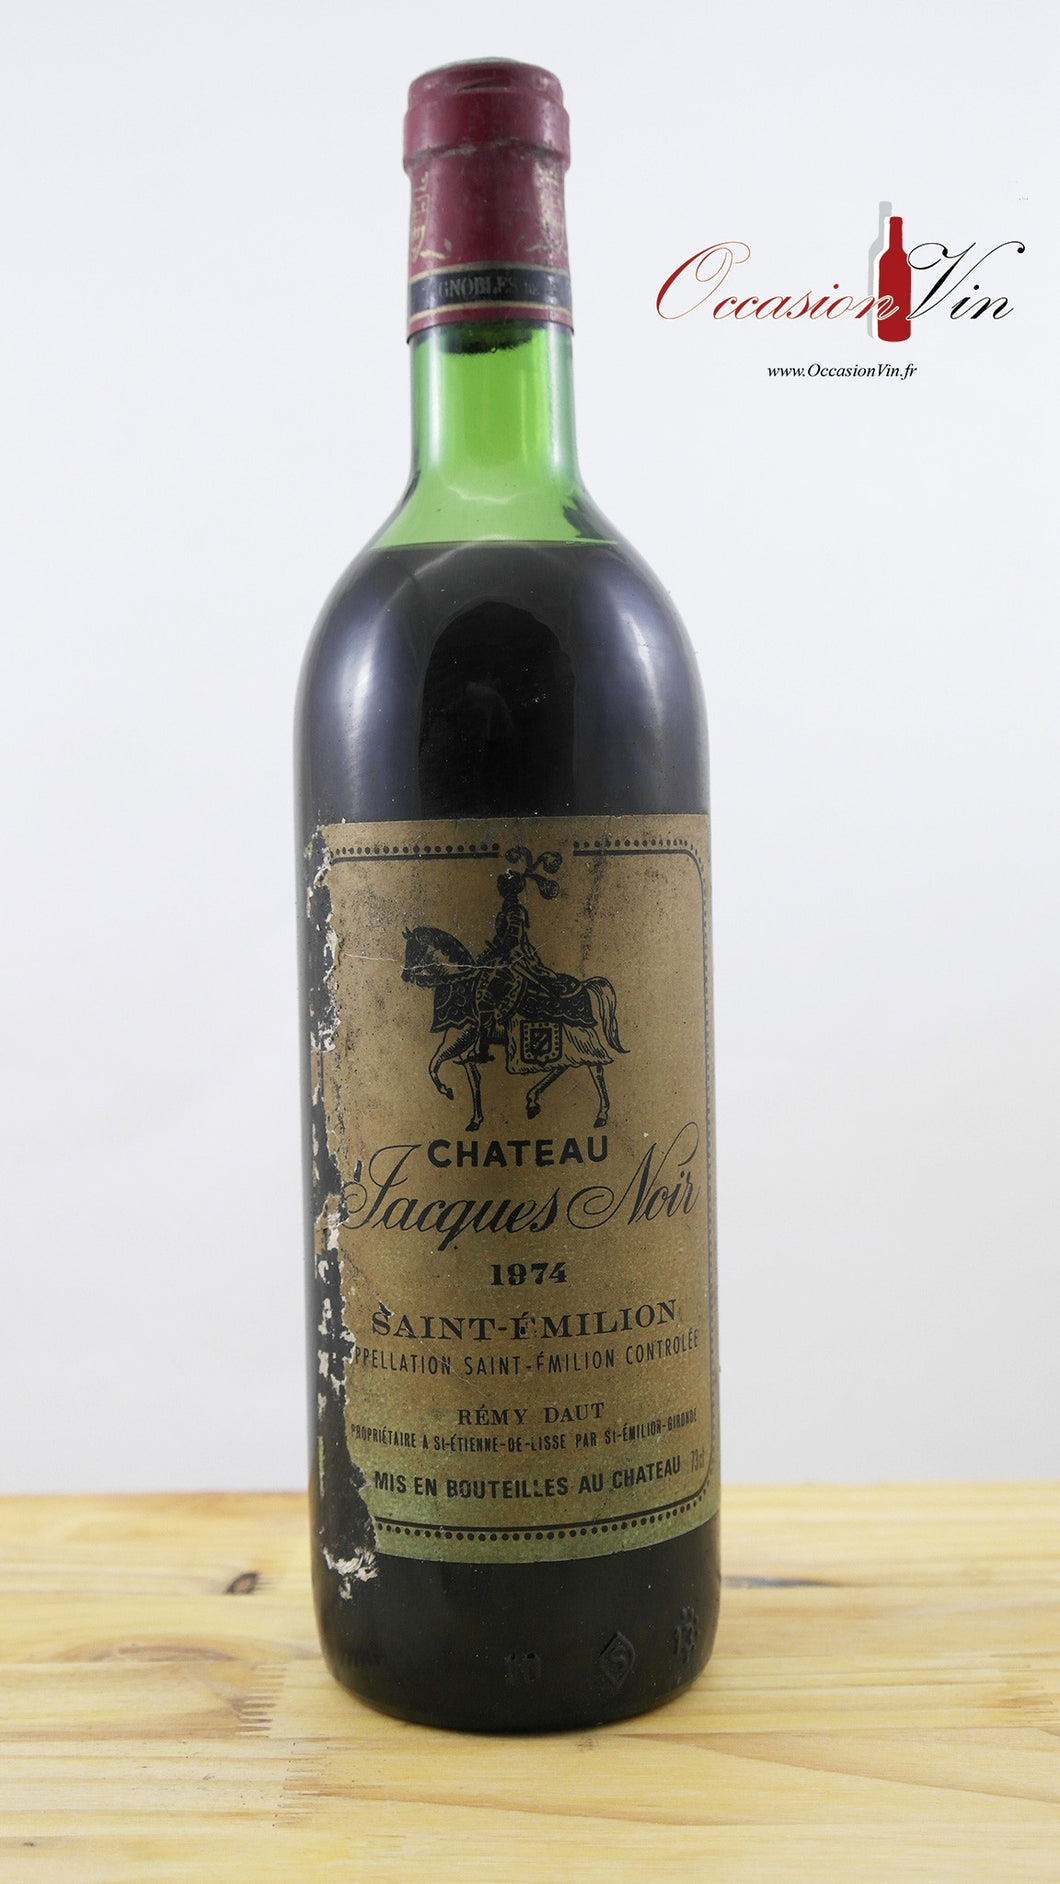 Château Jacques Noir ETA Vin 1974